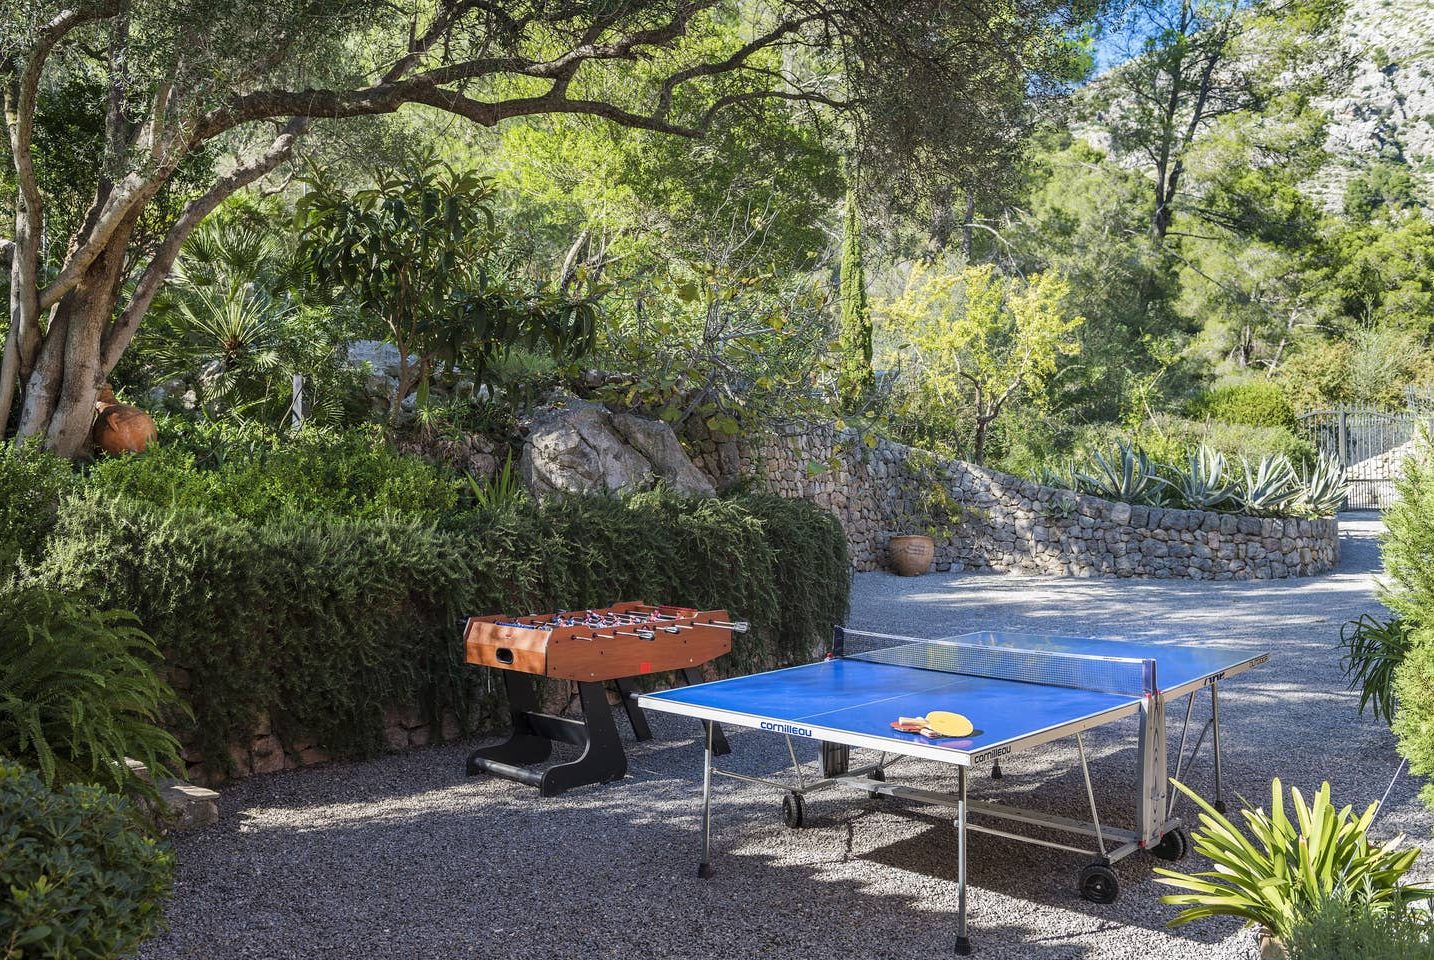 Villa Can Punx Dalt in Mallorca